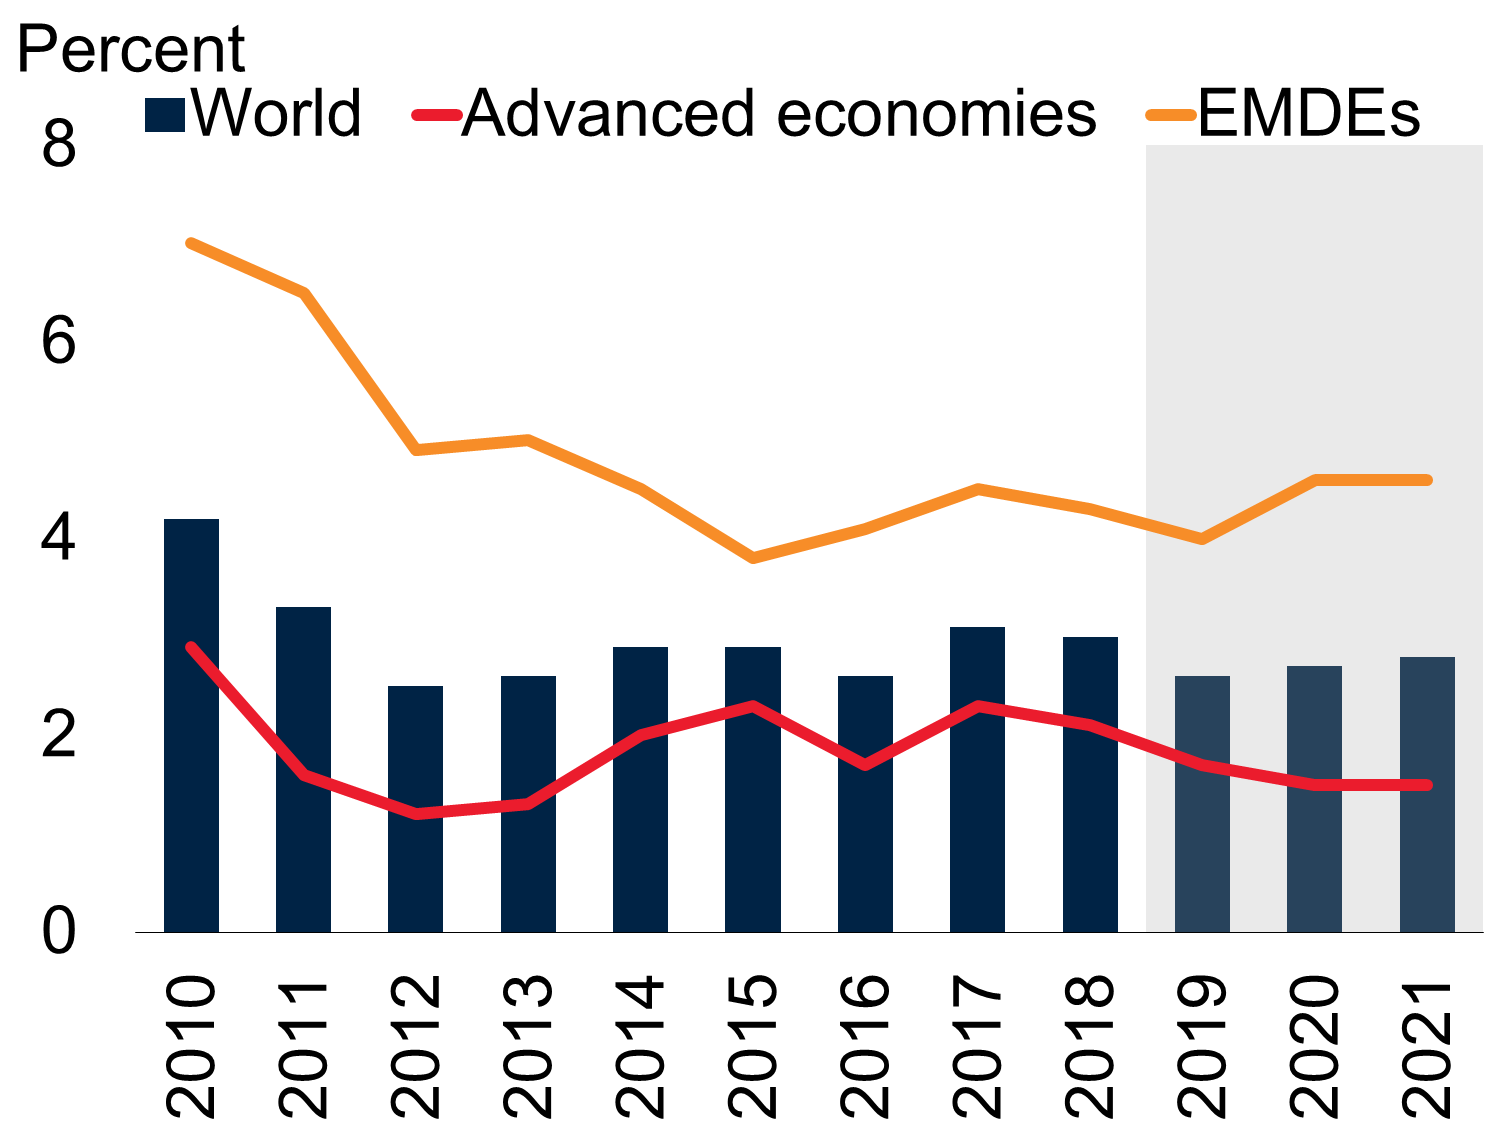 Global GDP growth. Source: World Bank (2019)